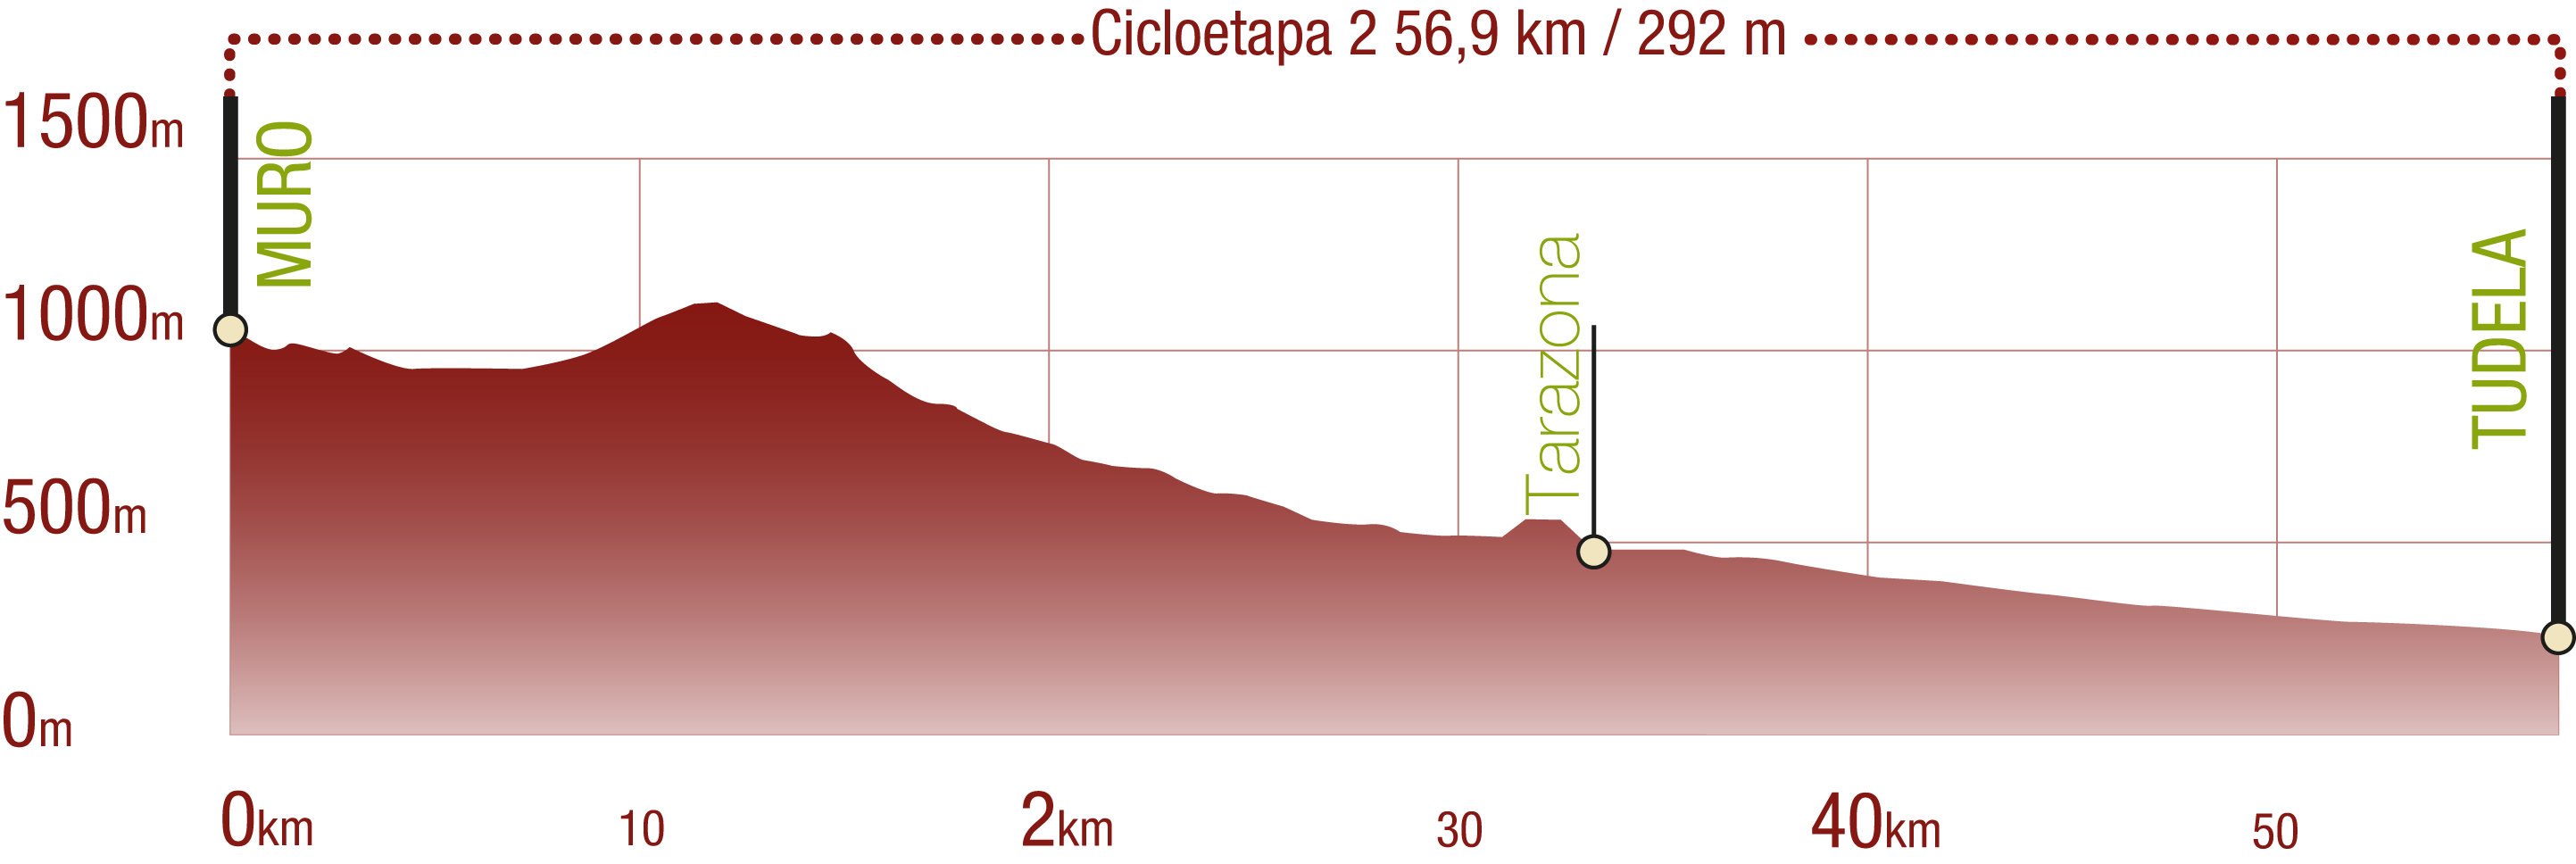 Perfil 
Perfil de la Cicloetapa 2 del CN del Agua Soriano. Camino Antonino: 56,9 km / Desnivel de subida 292 m

